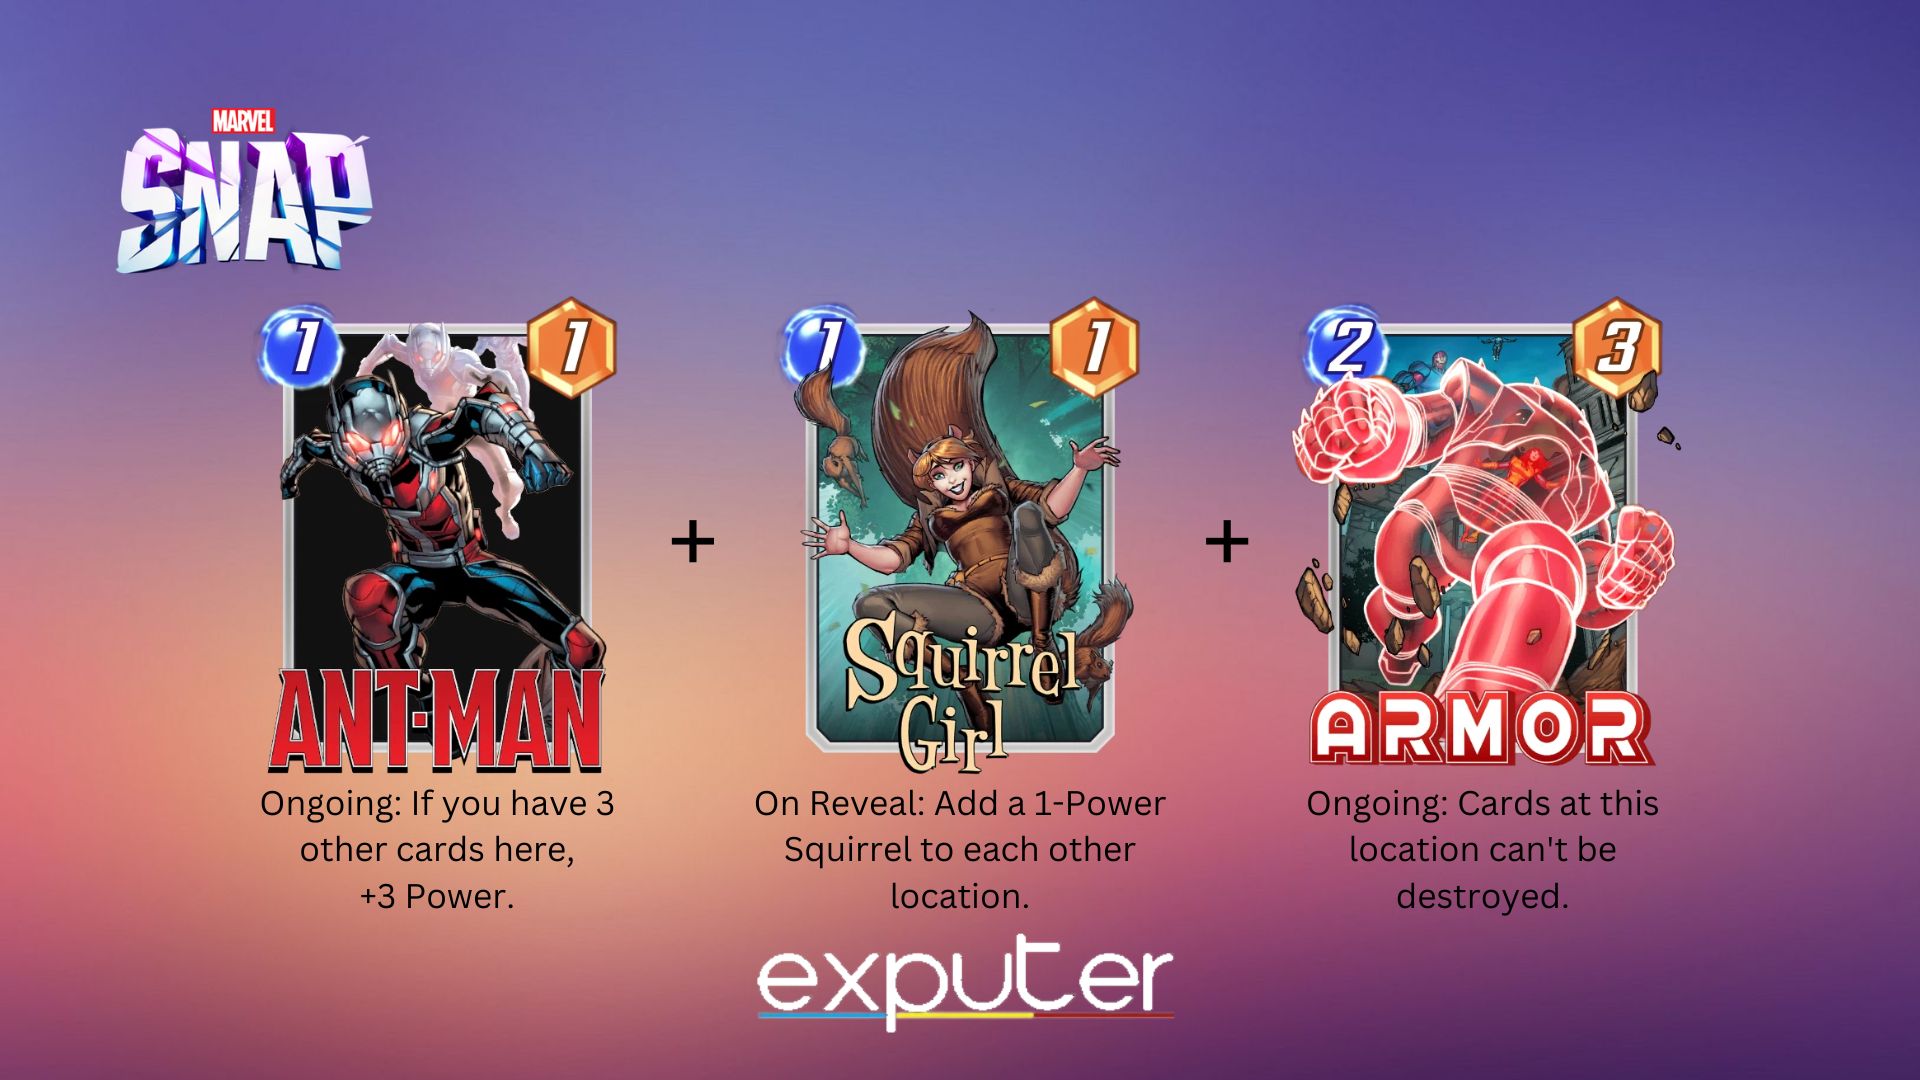 Combinazione di carte con Ant-man in Marvel Snap.